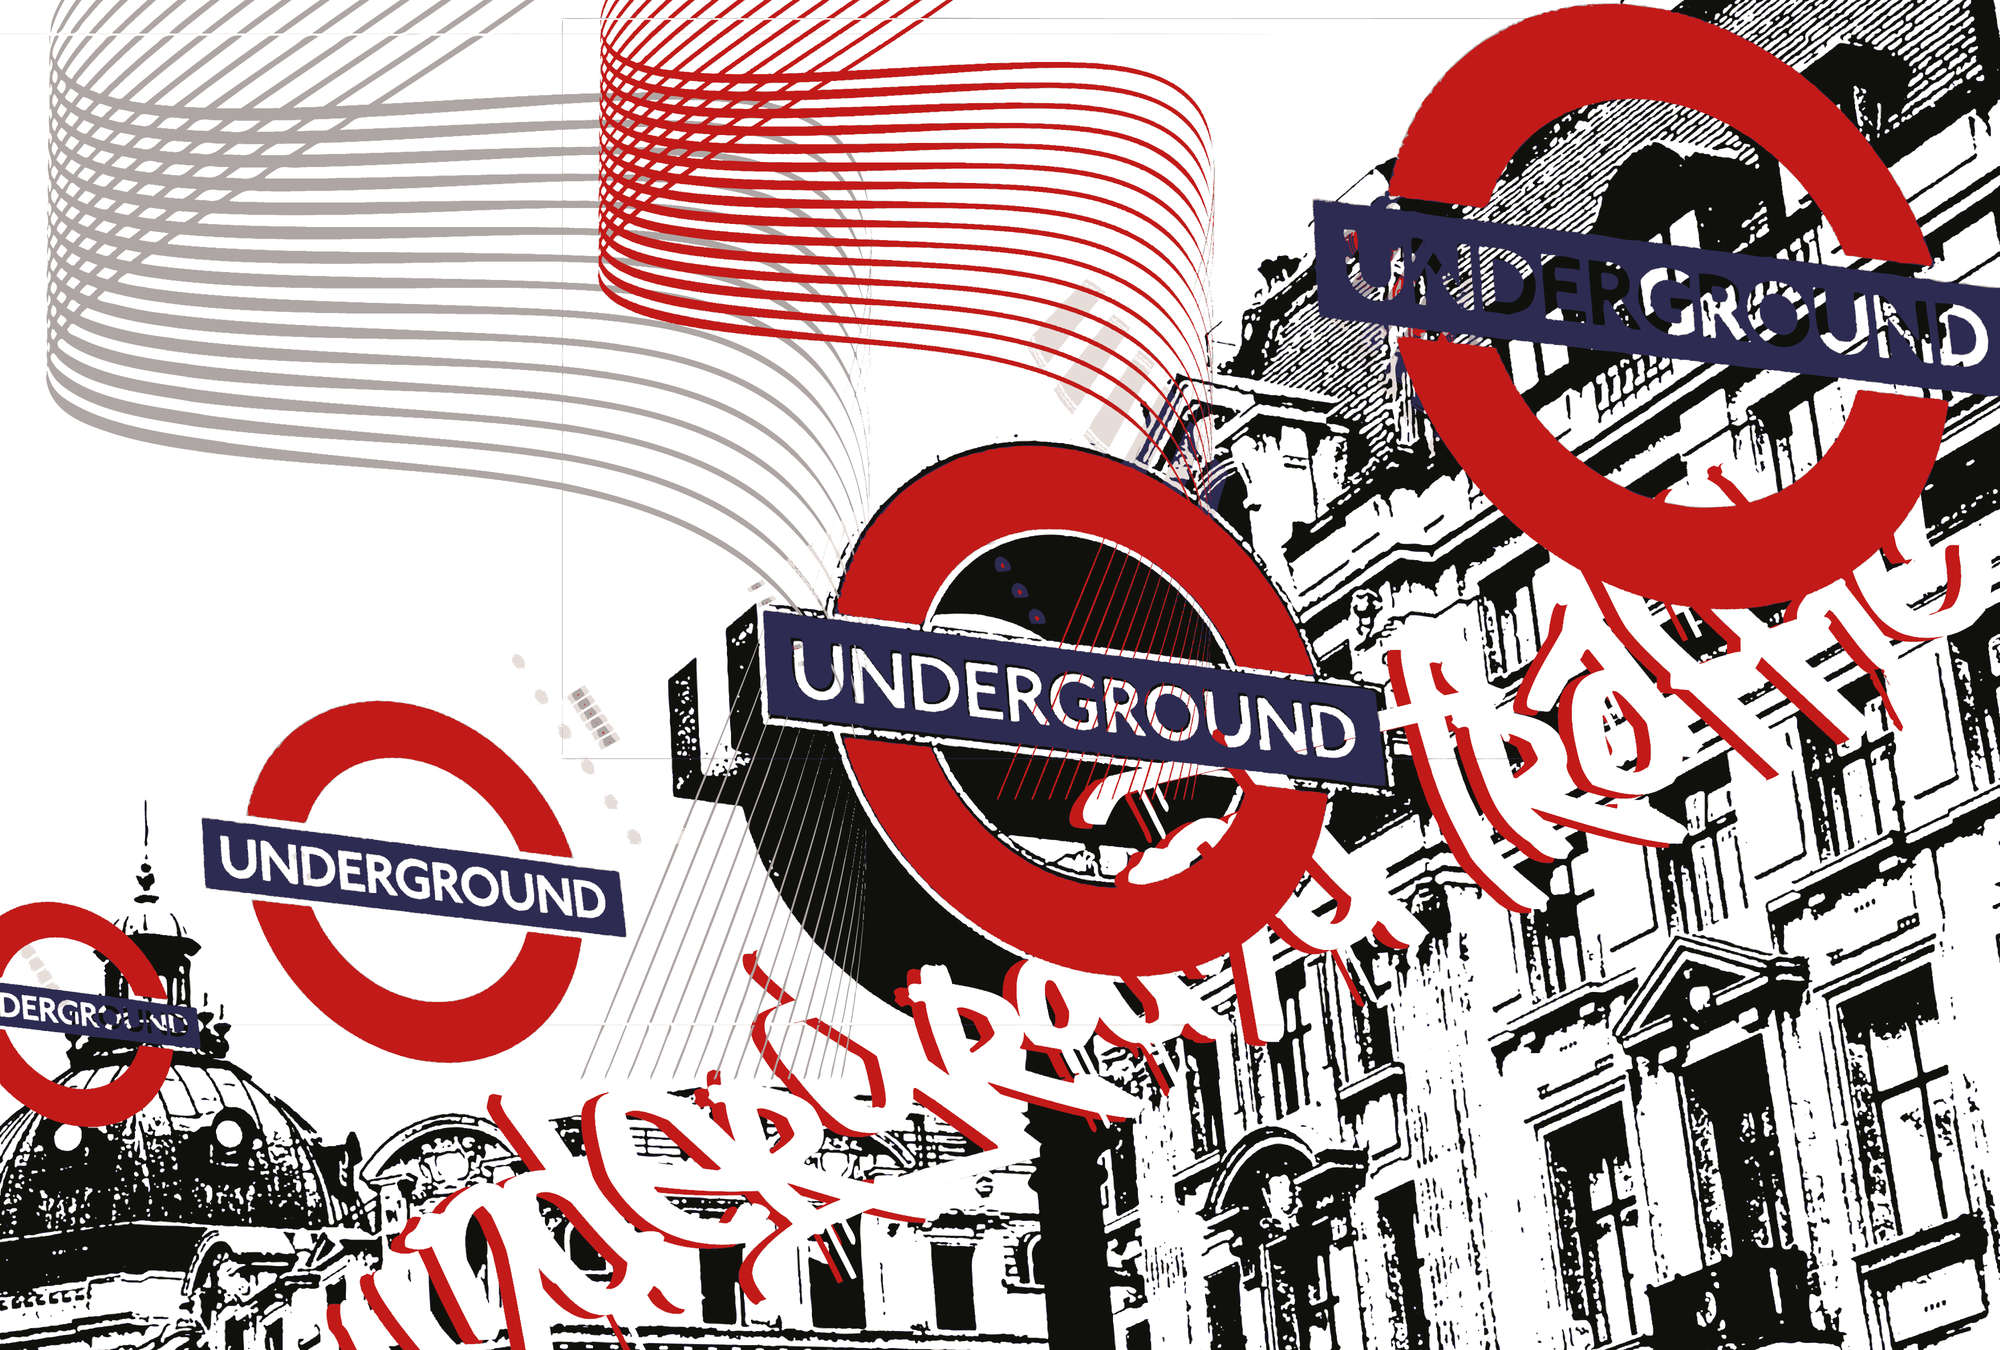             Underground - Mural de pared de estilo londinense, urbano y moderno
        